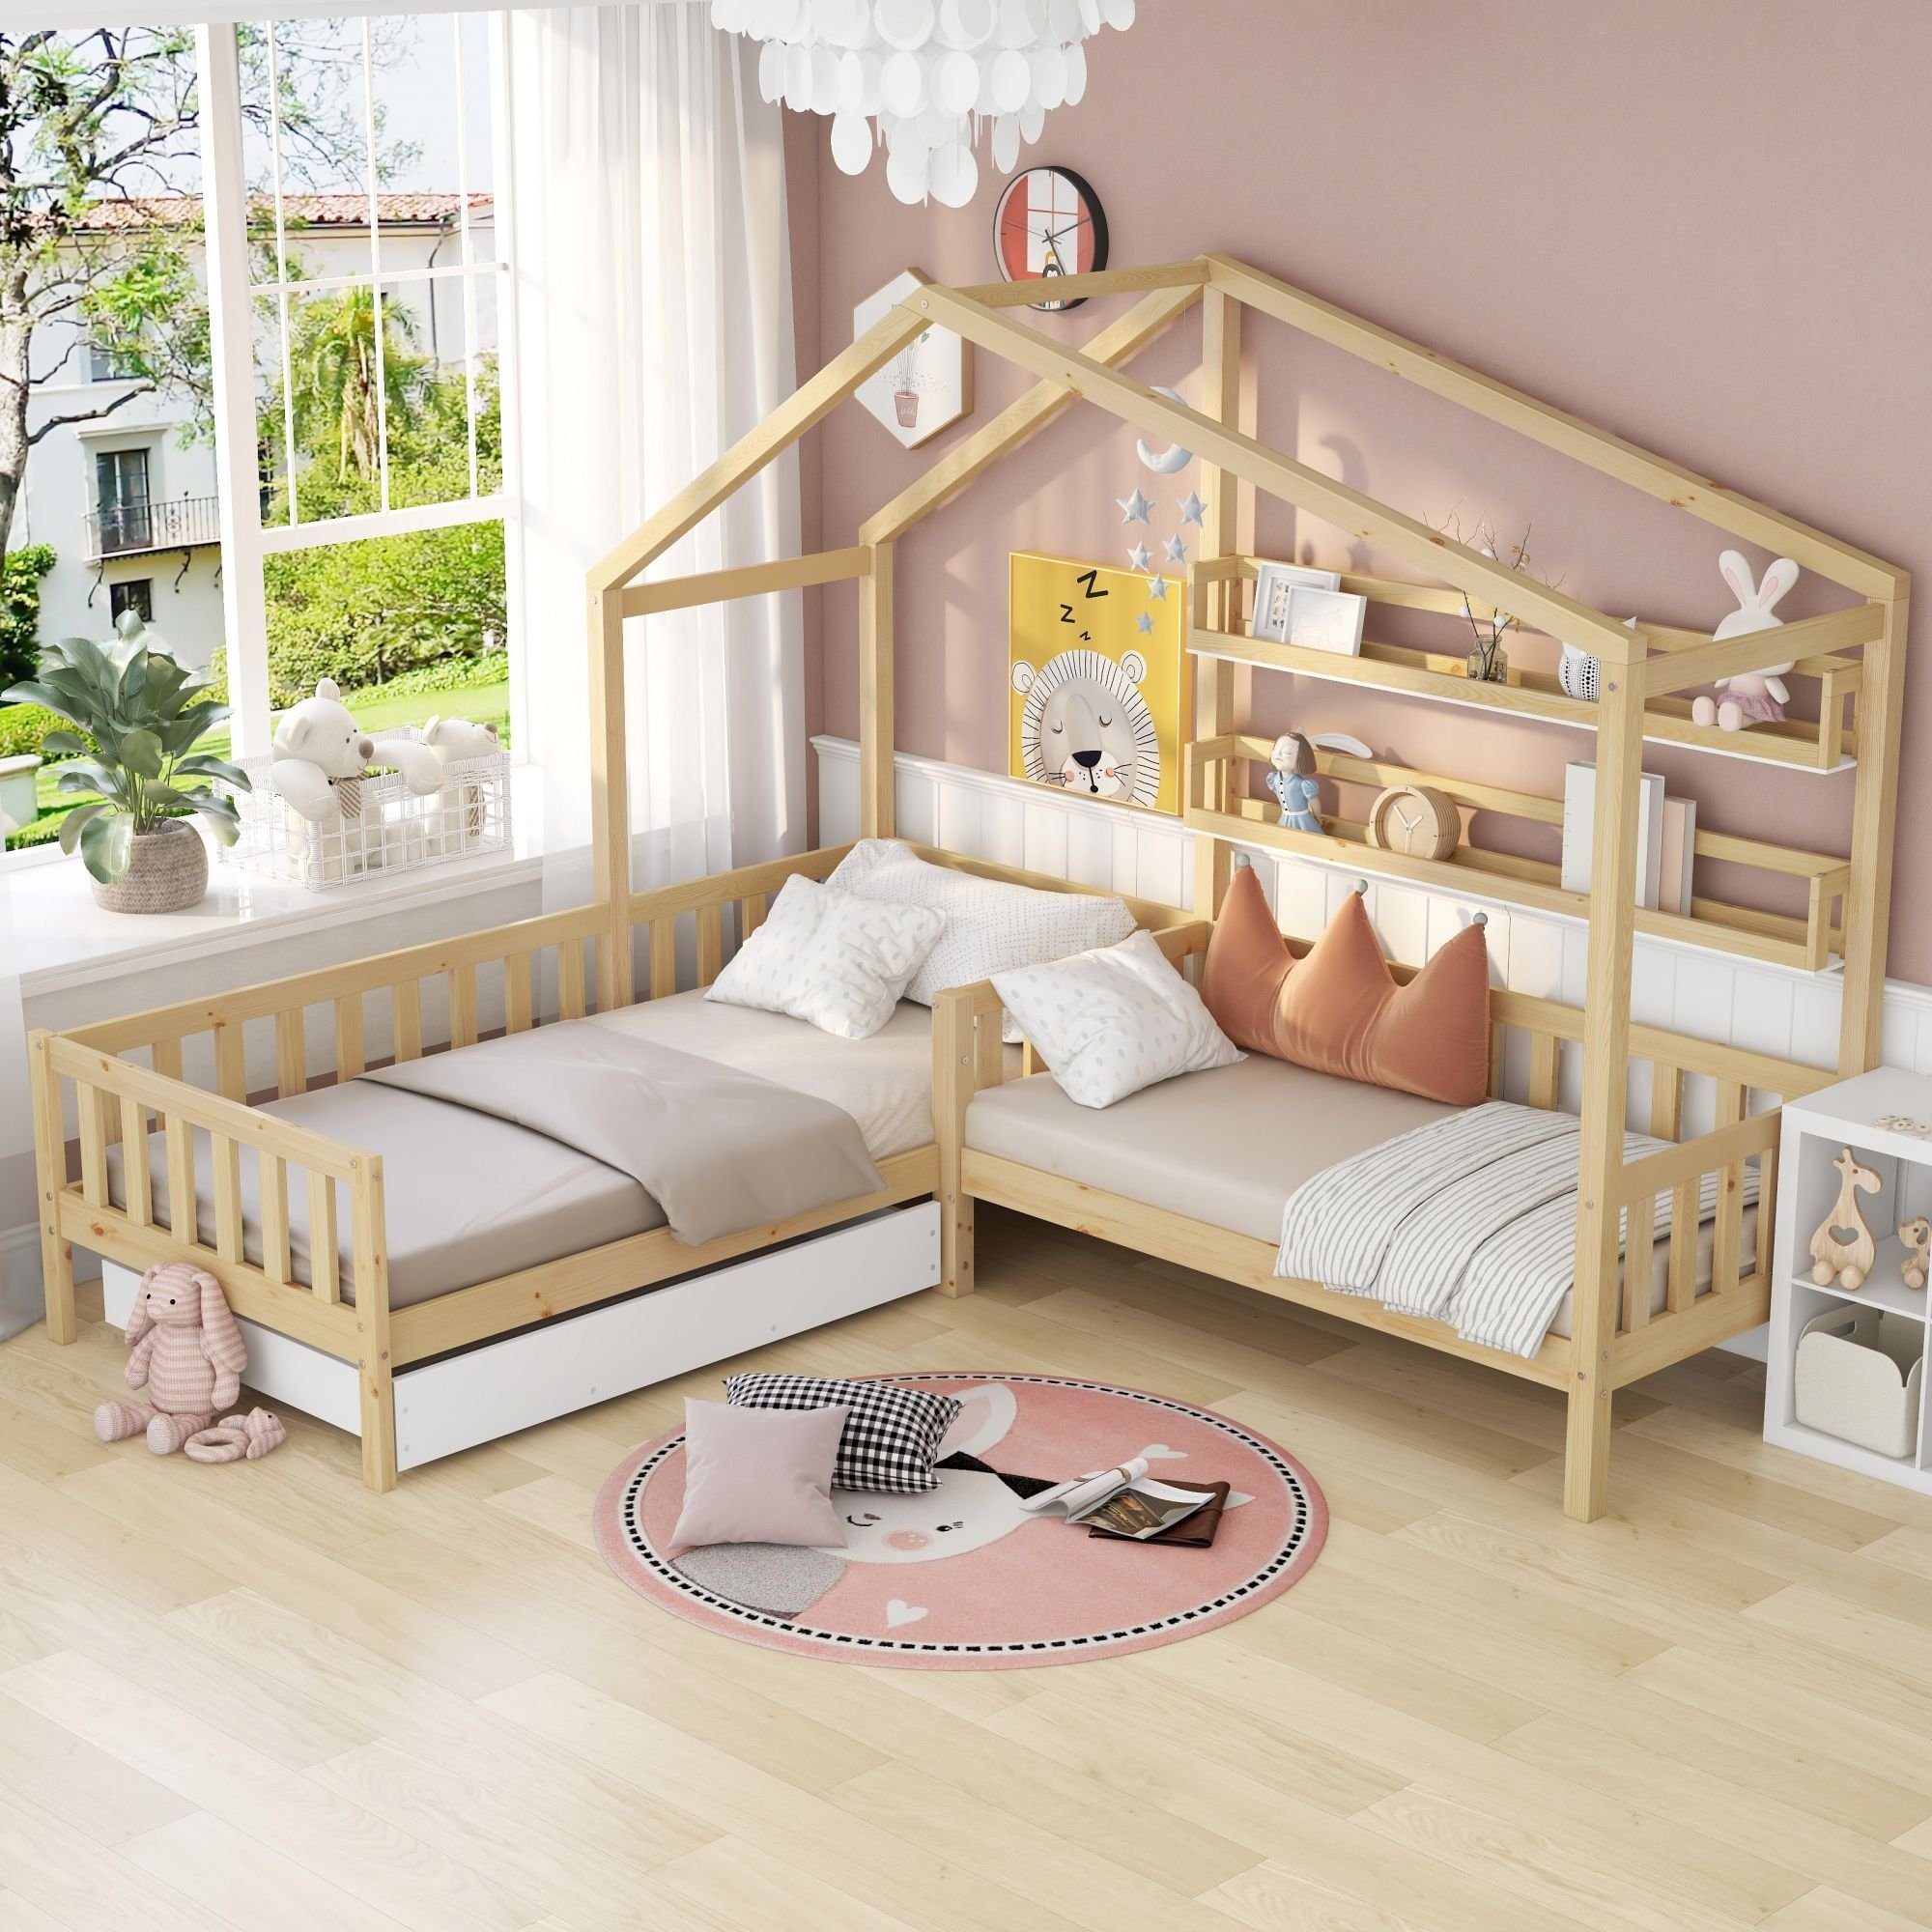 SIKAINI Kinderbett A-DJ-N622-28739394NAA (set, 1-tlg., mit Lattenrost), Kinderbett Hausbett mit Schubladen und Regalen